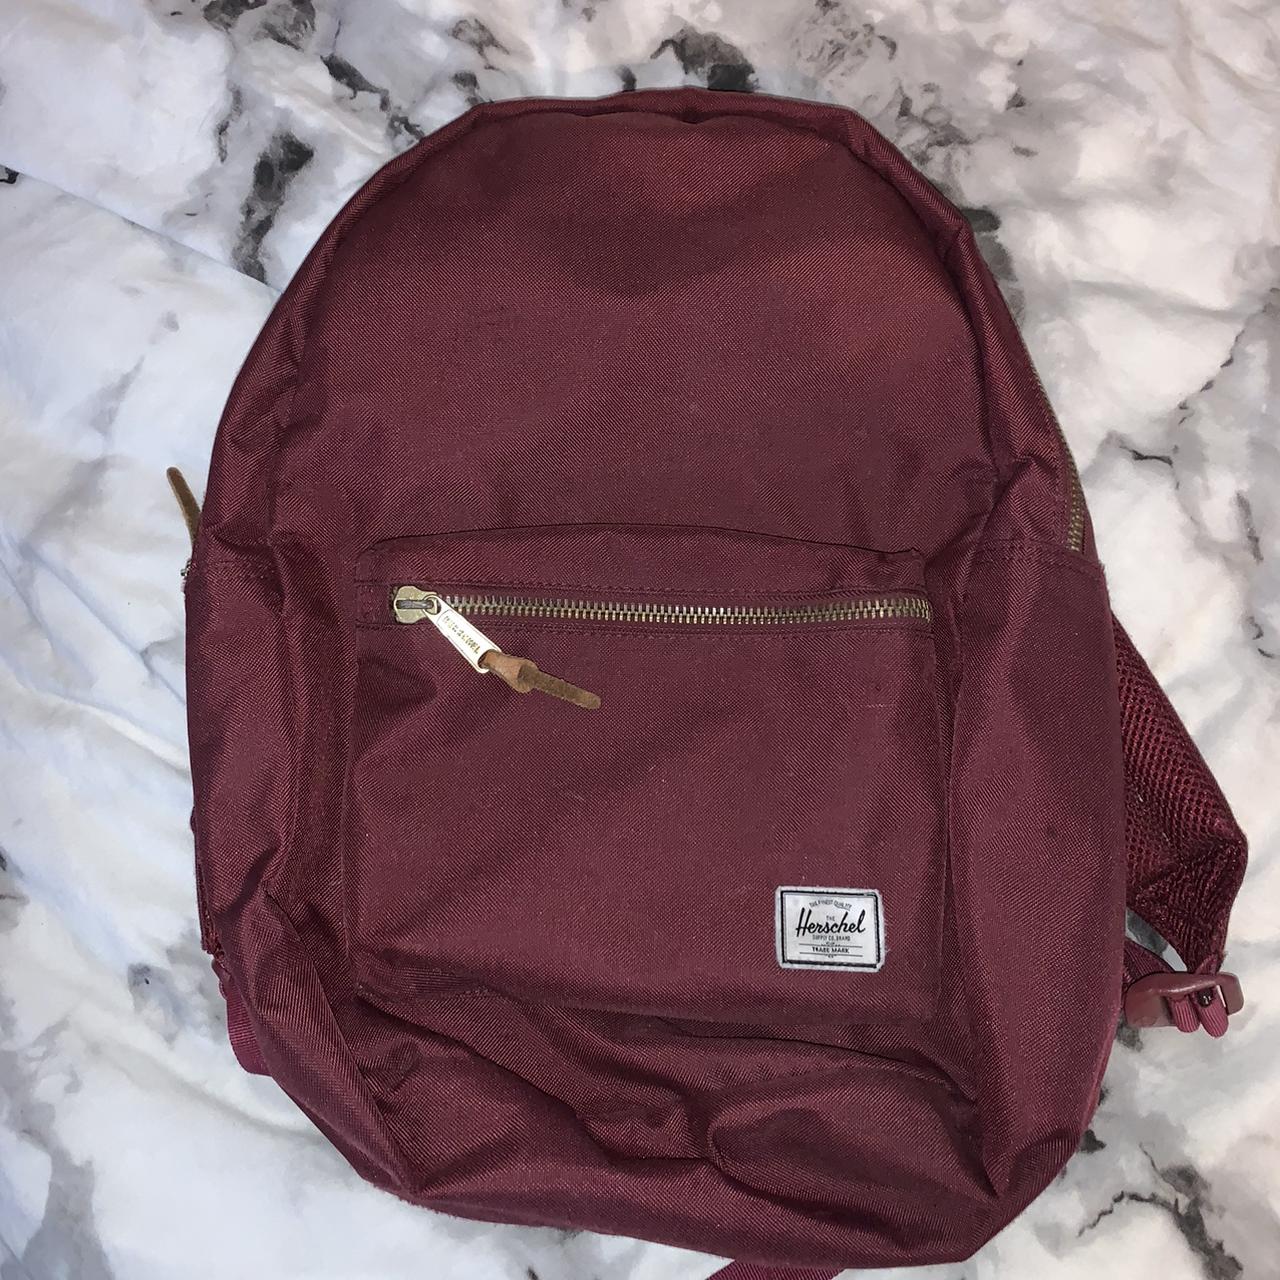 Herschel burgundy school bag in great condition no ... - Depop